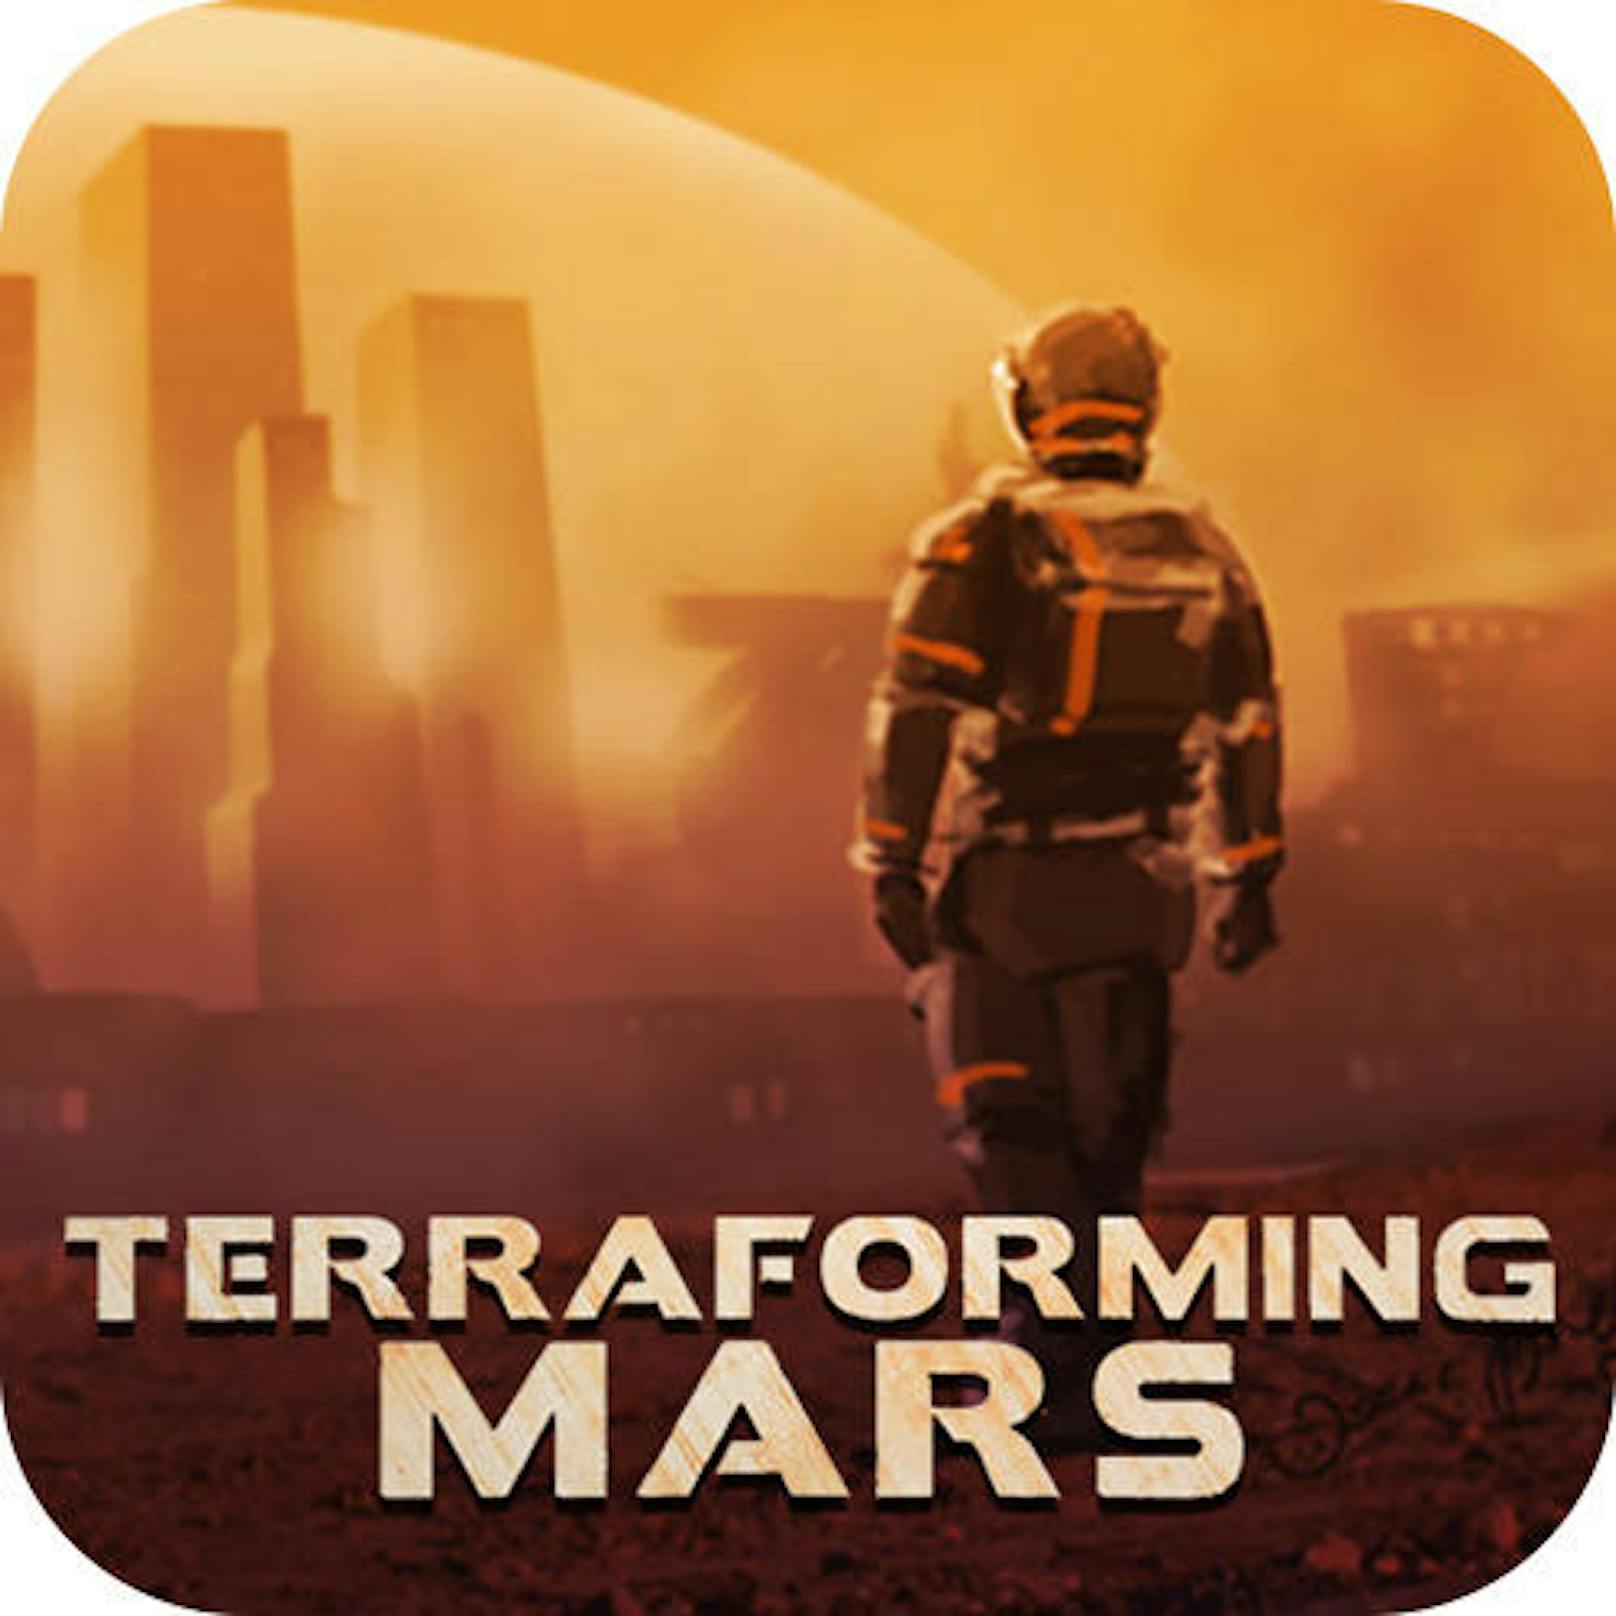 Terraforming Mars (Stronghold Games) - Nominiert zum Spiel des Jahres. Im Jahre 2400 treten  Spieler als Handelsgesellschaft an, um die menschliche Infrastruktur im gesamten Sonnensystem voranzutreiben und sogar den Mars zu besiedeln.